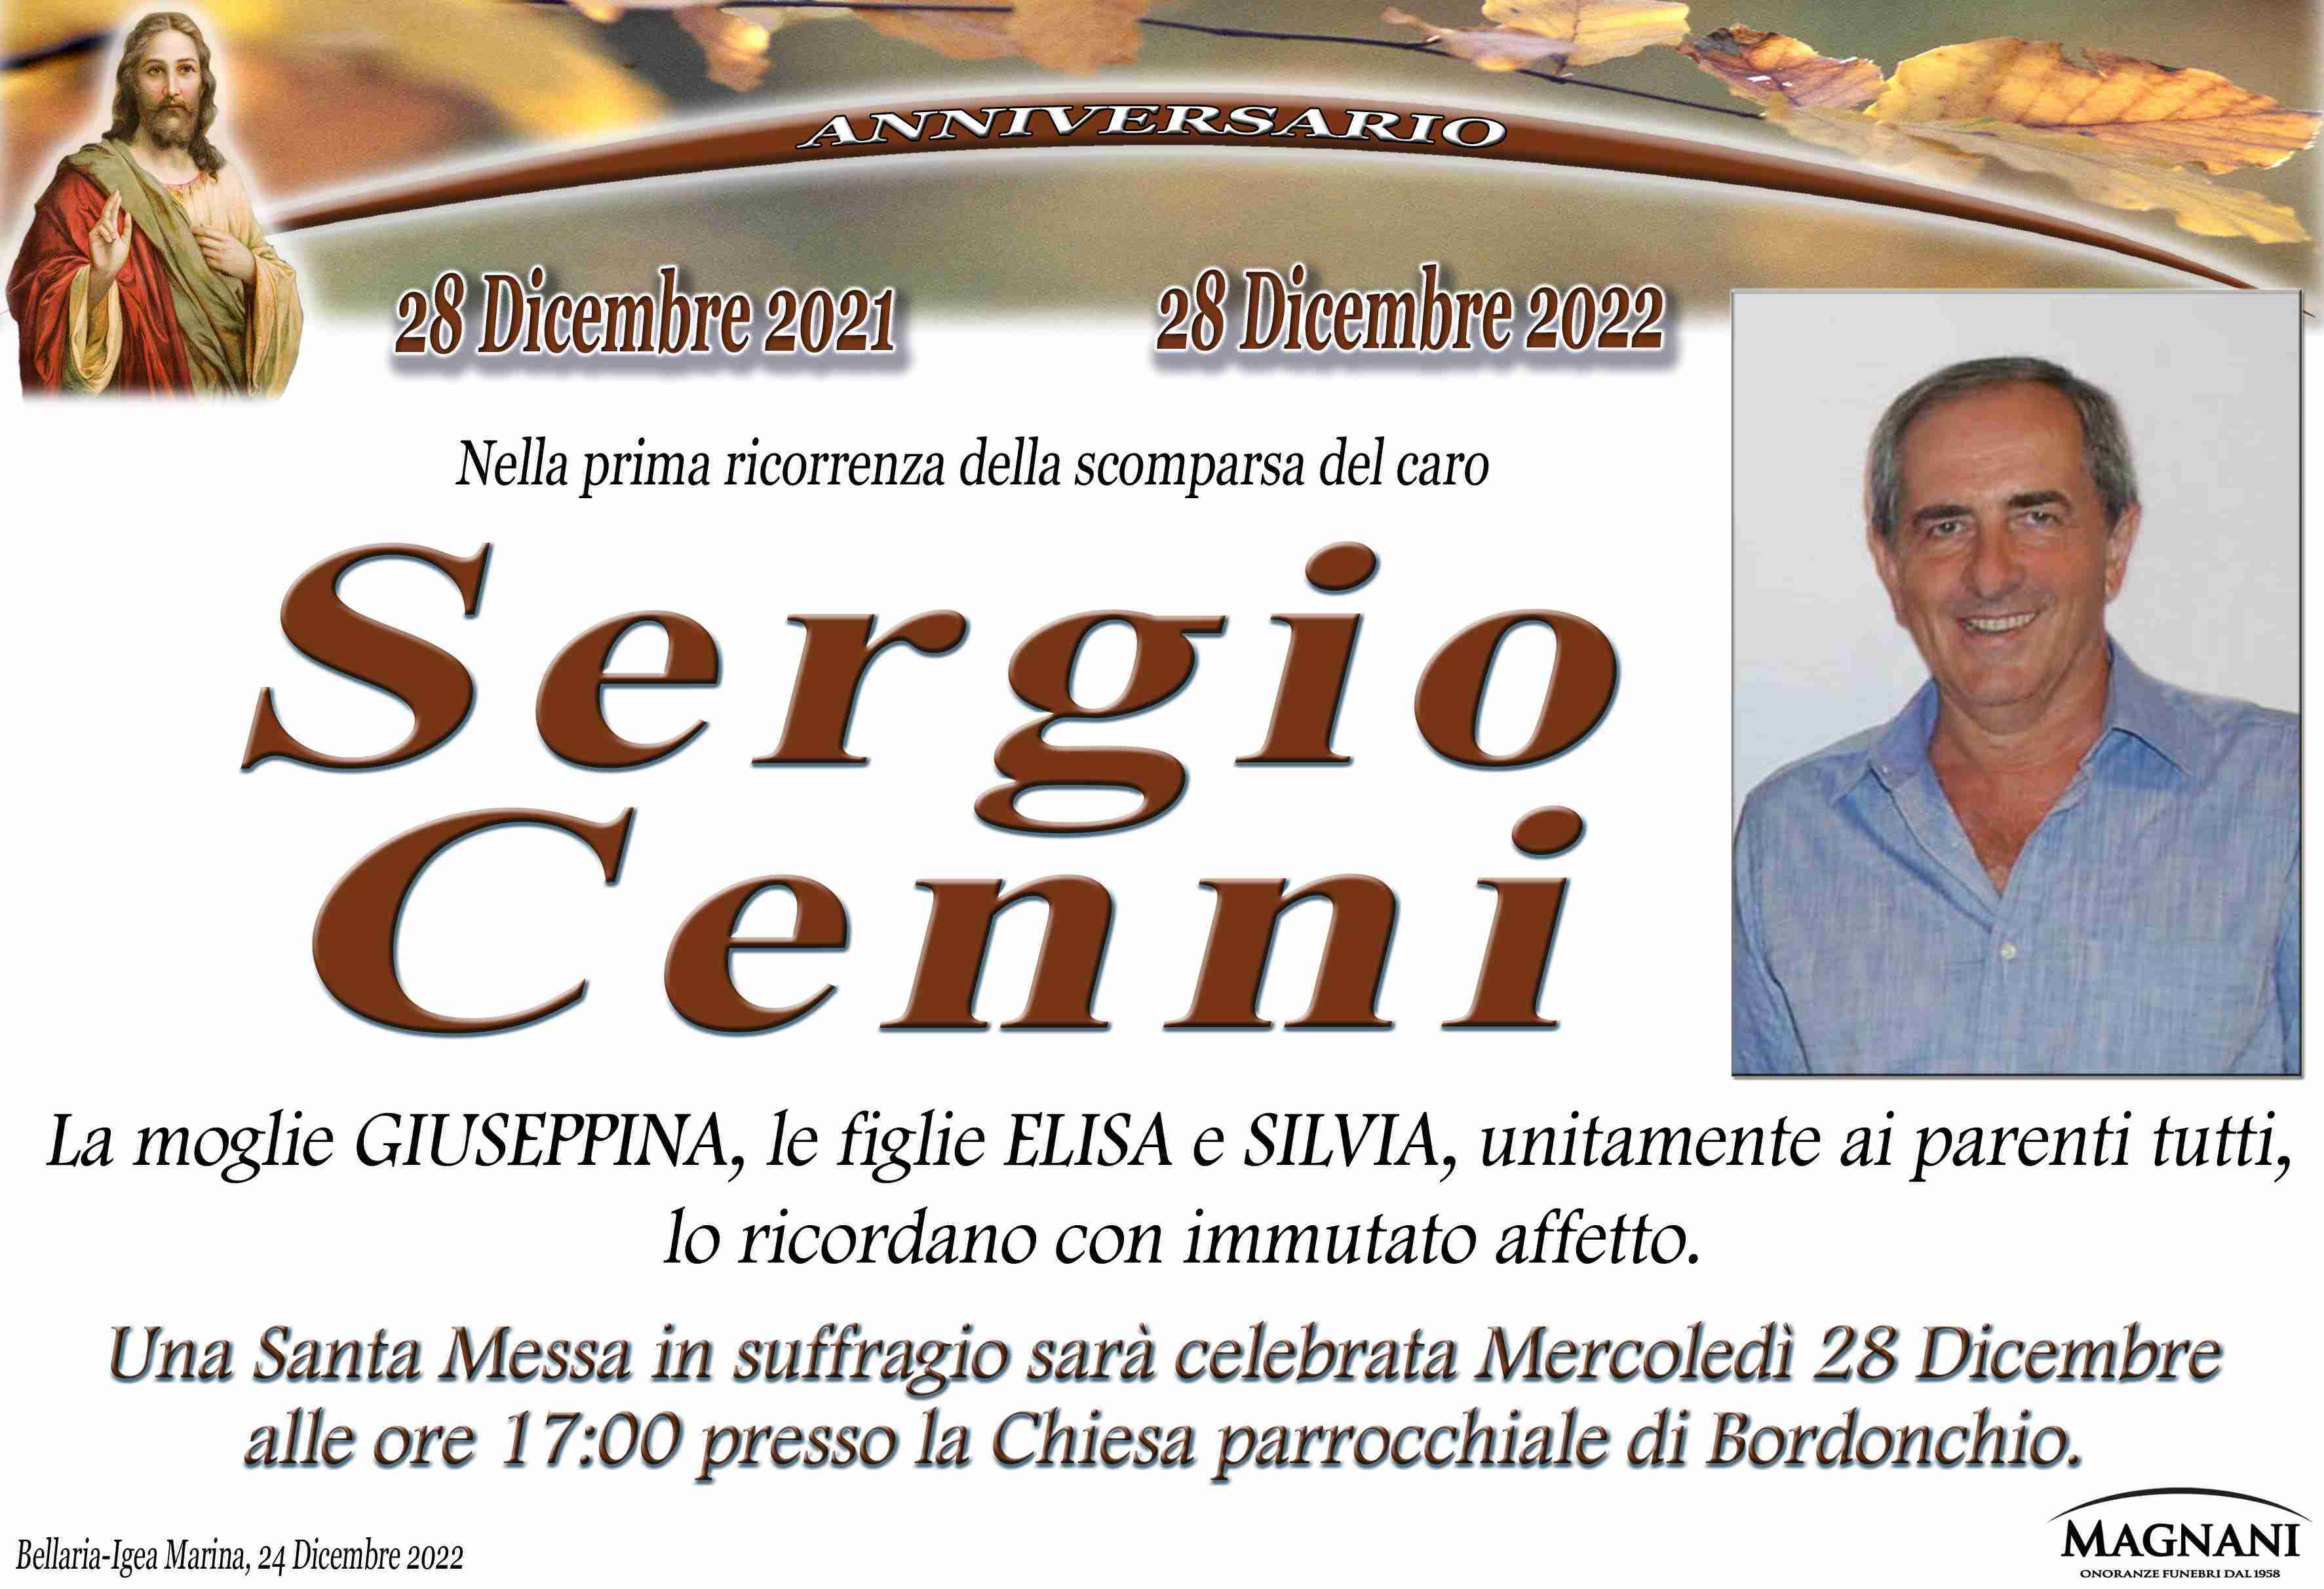 Sergio Cenni